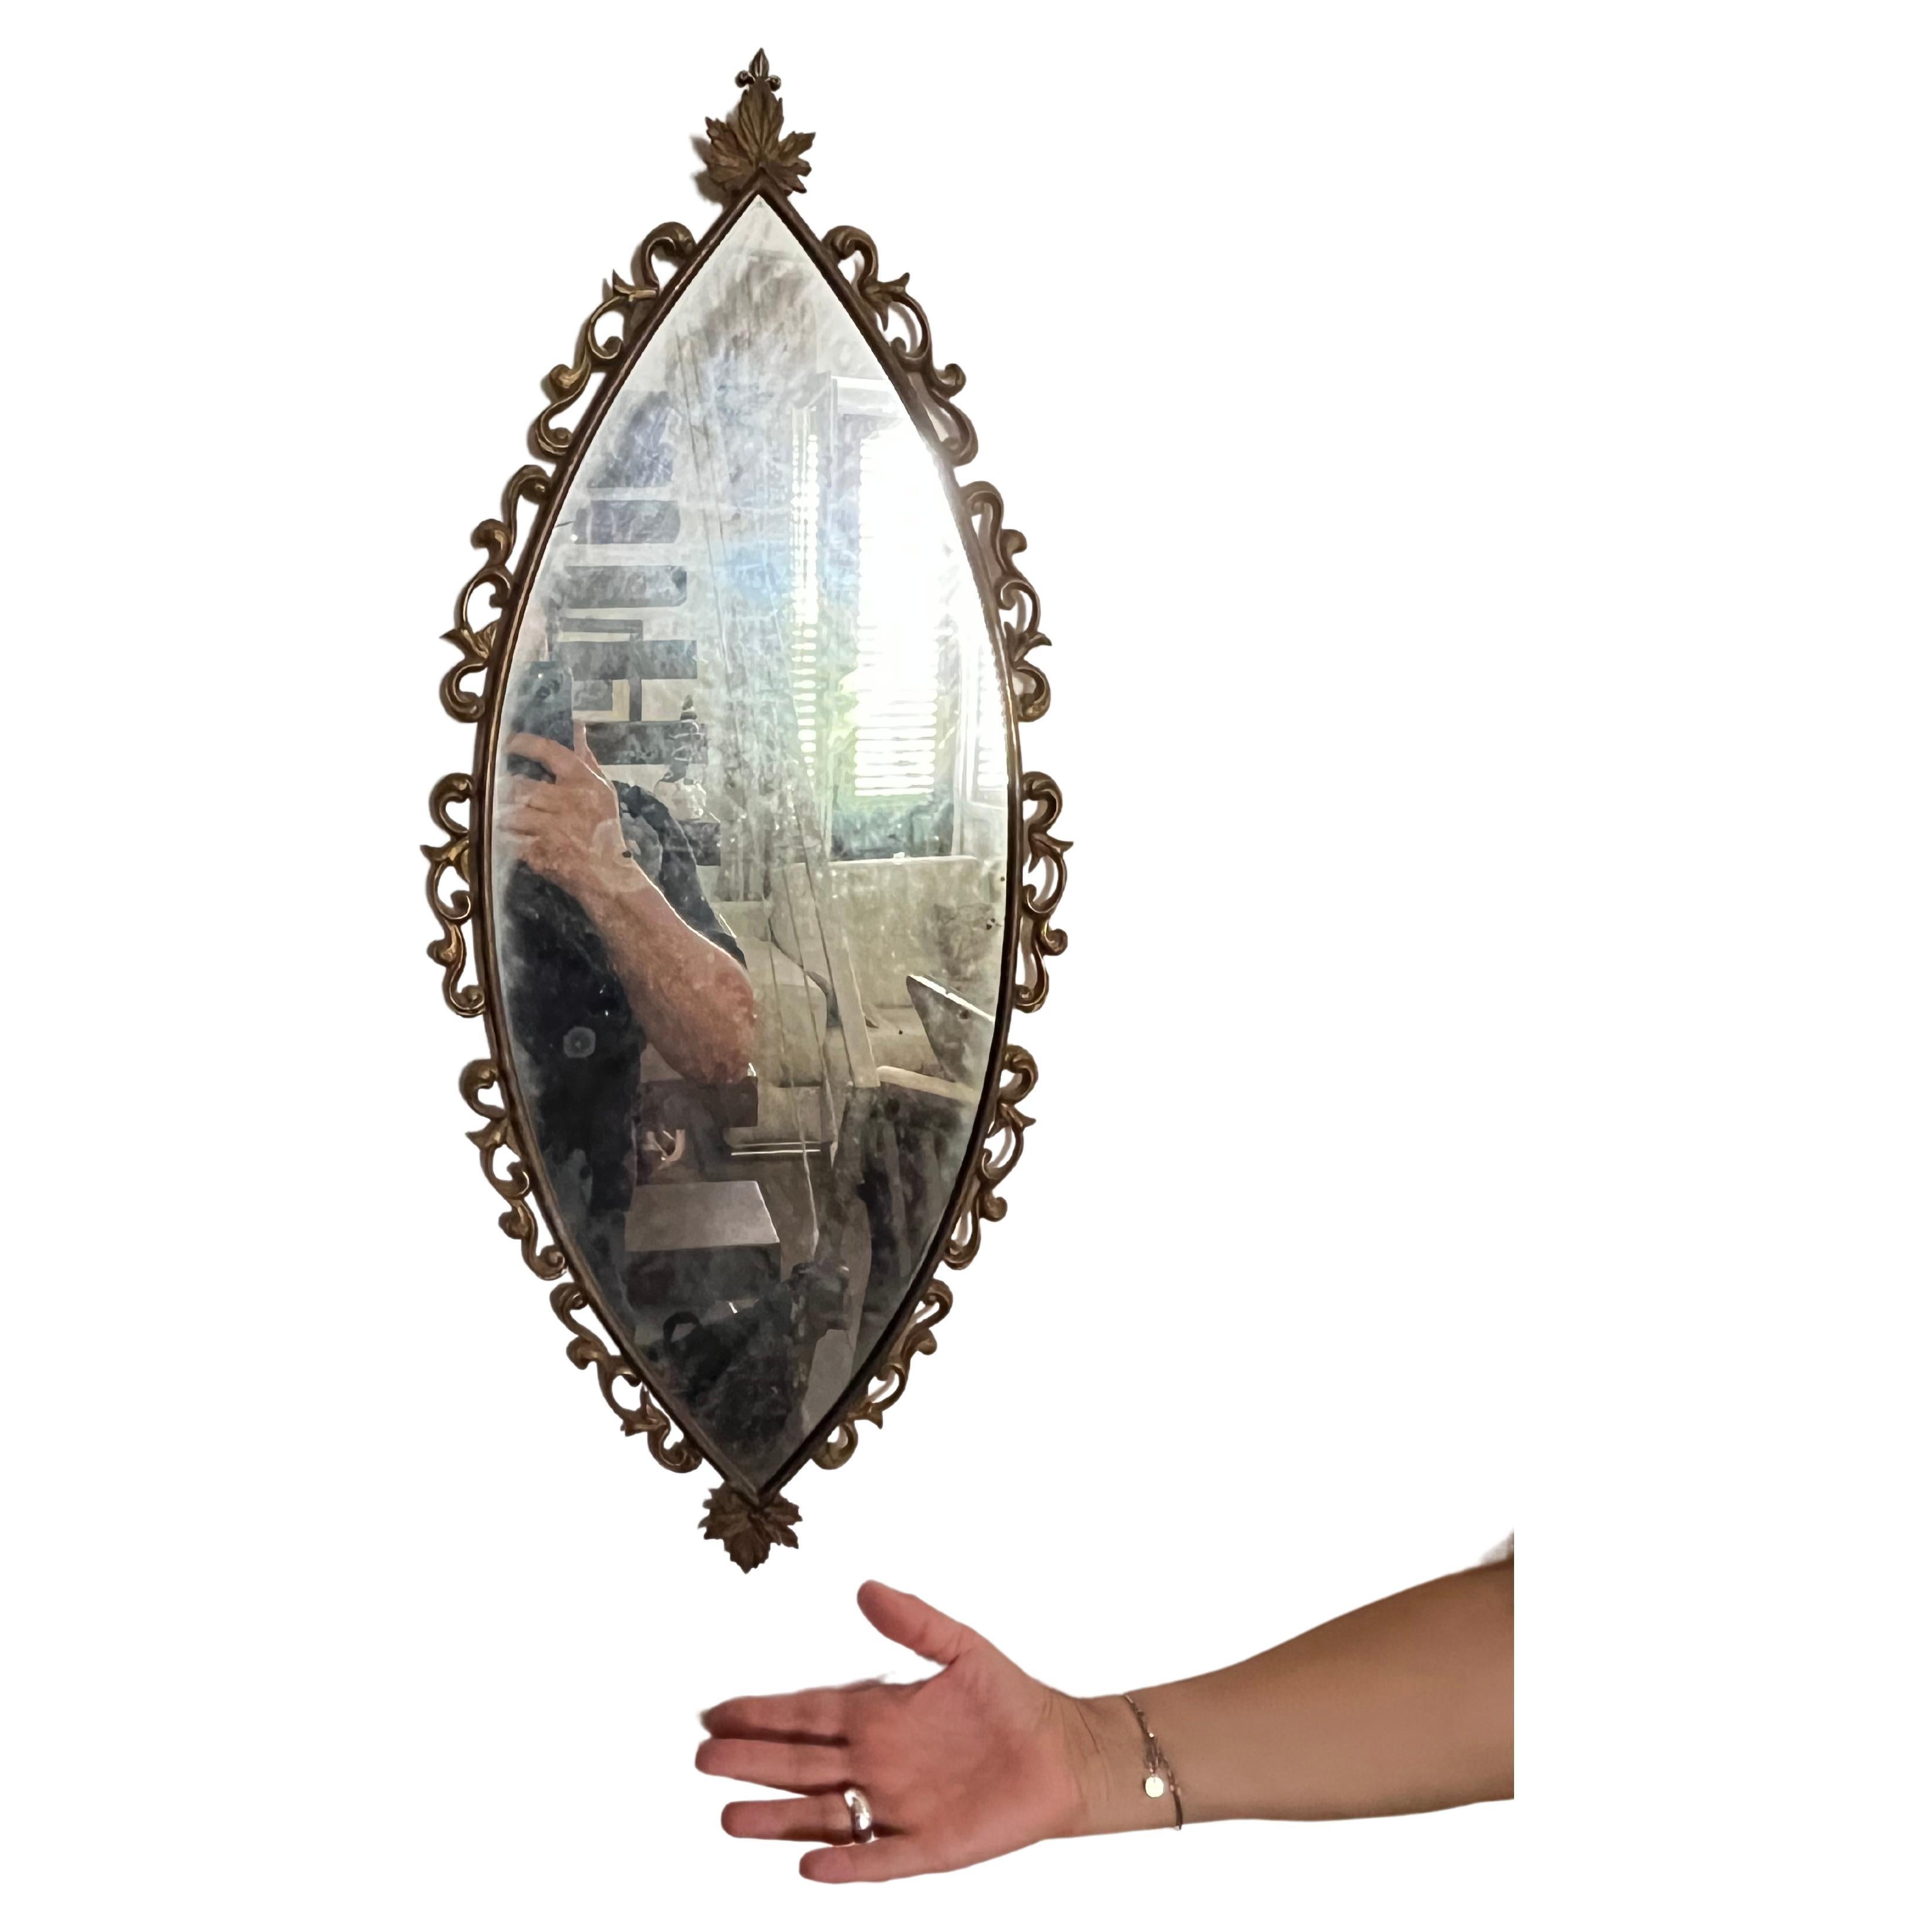 Miroir en bronze, fabrication italienne, années 1950
Trouvé dans un appartement noble, il est intact et en bon état. Petits signes de l'époque.
La forme est très particulière.

Nous garantissons un emballage adéquat et nous expédions par DHL, en